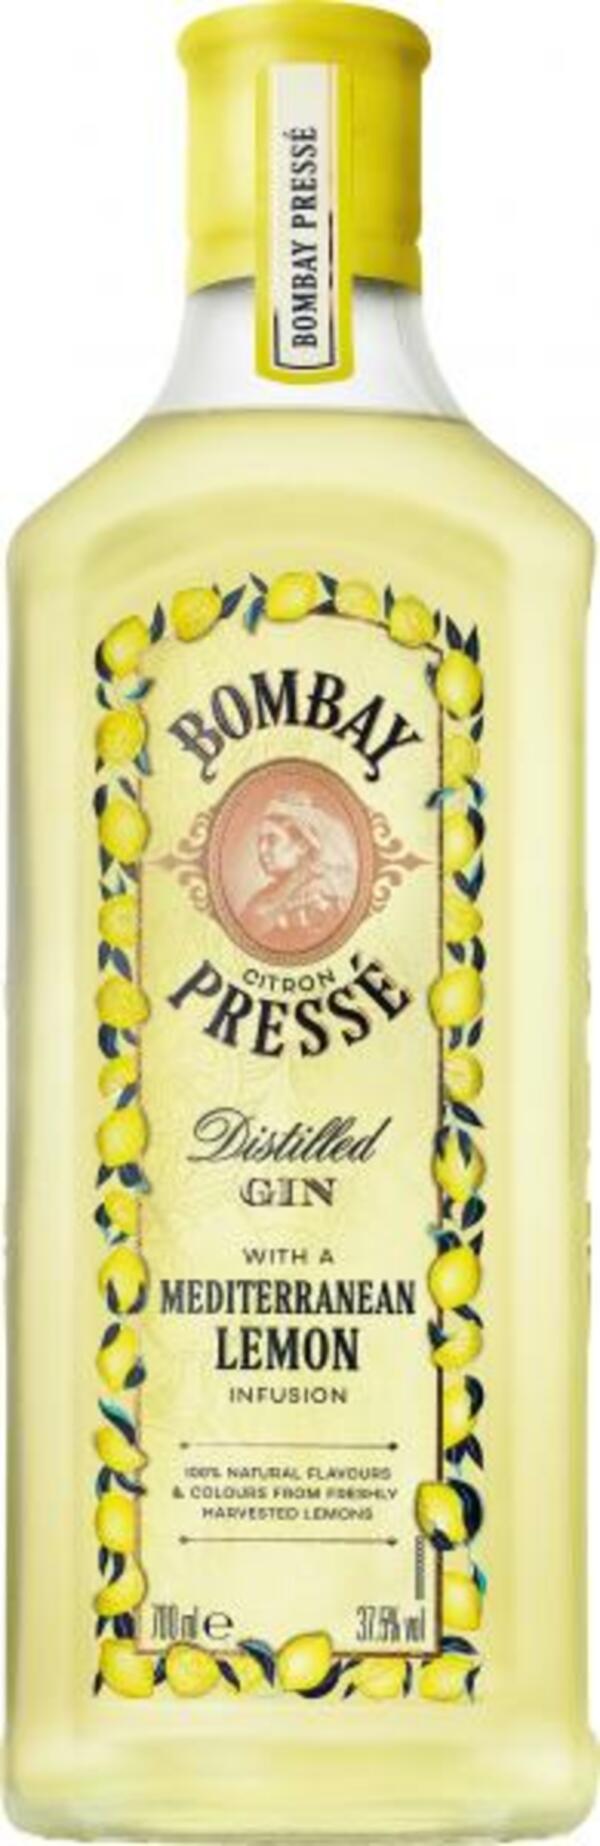 Bild 1 von Bombay Citron Presse Gin